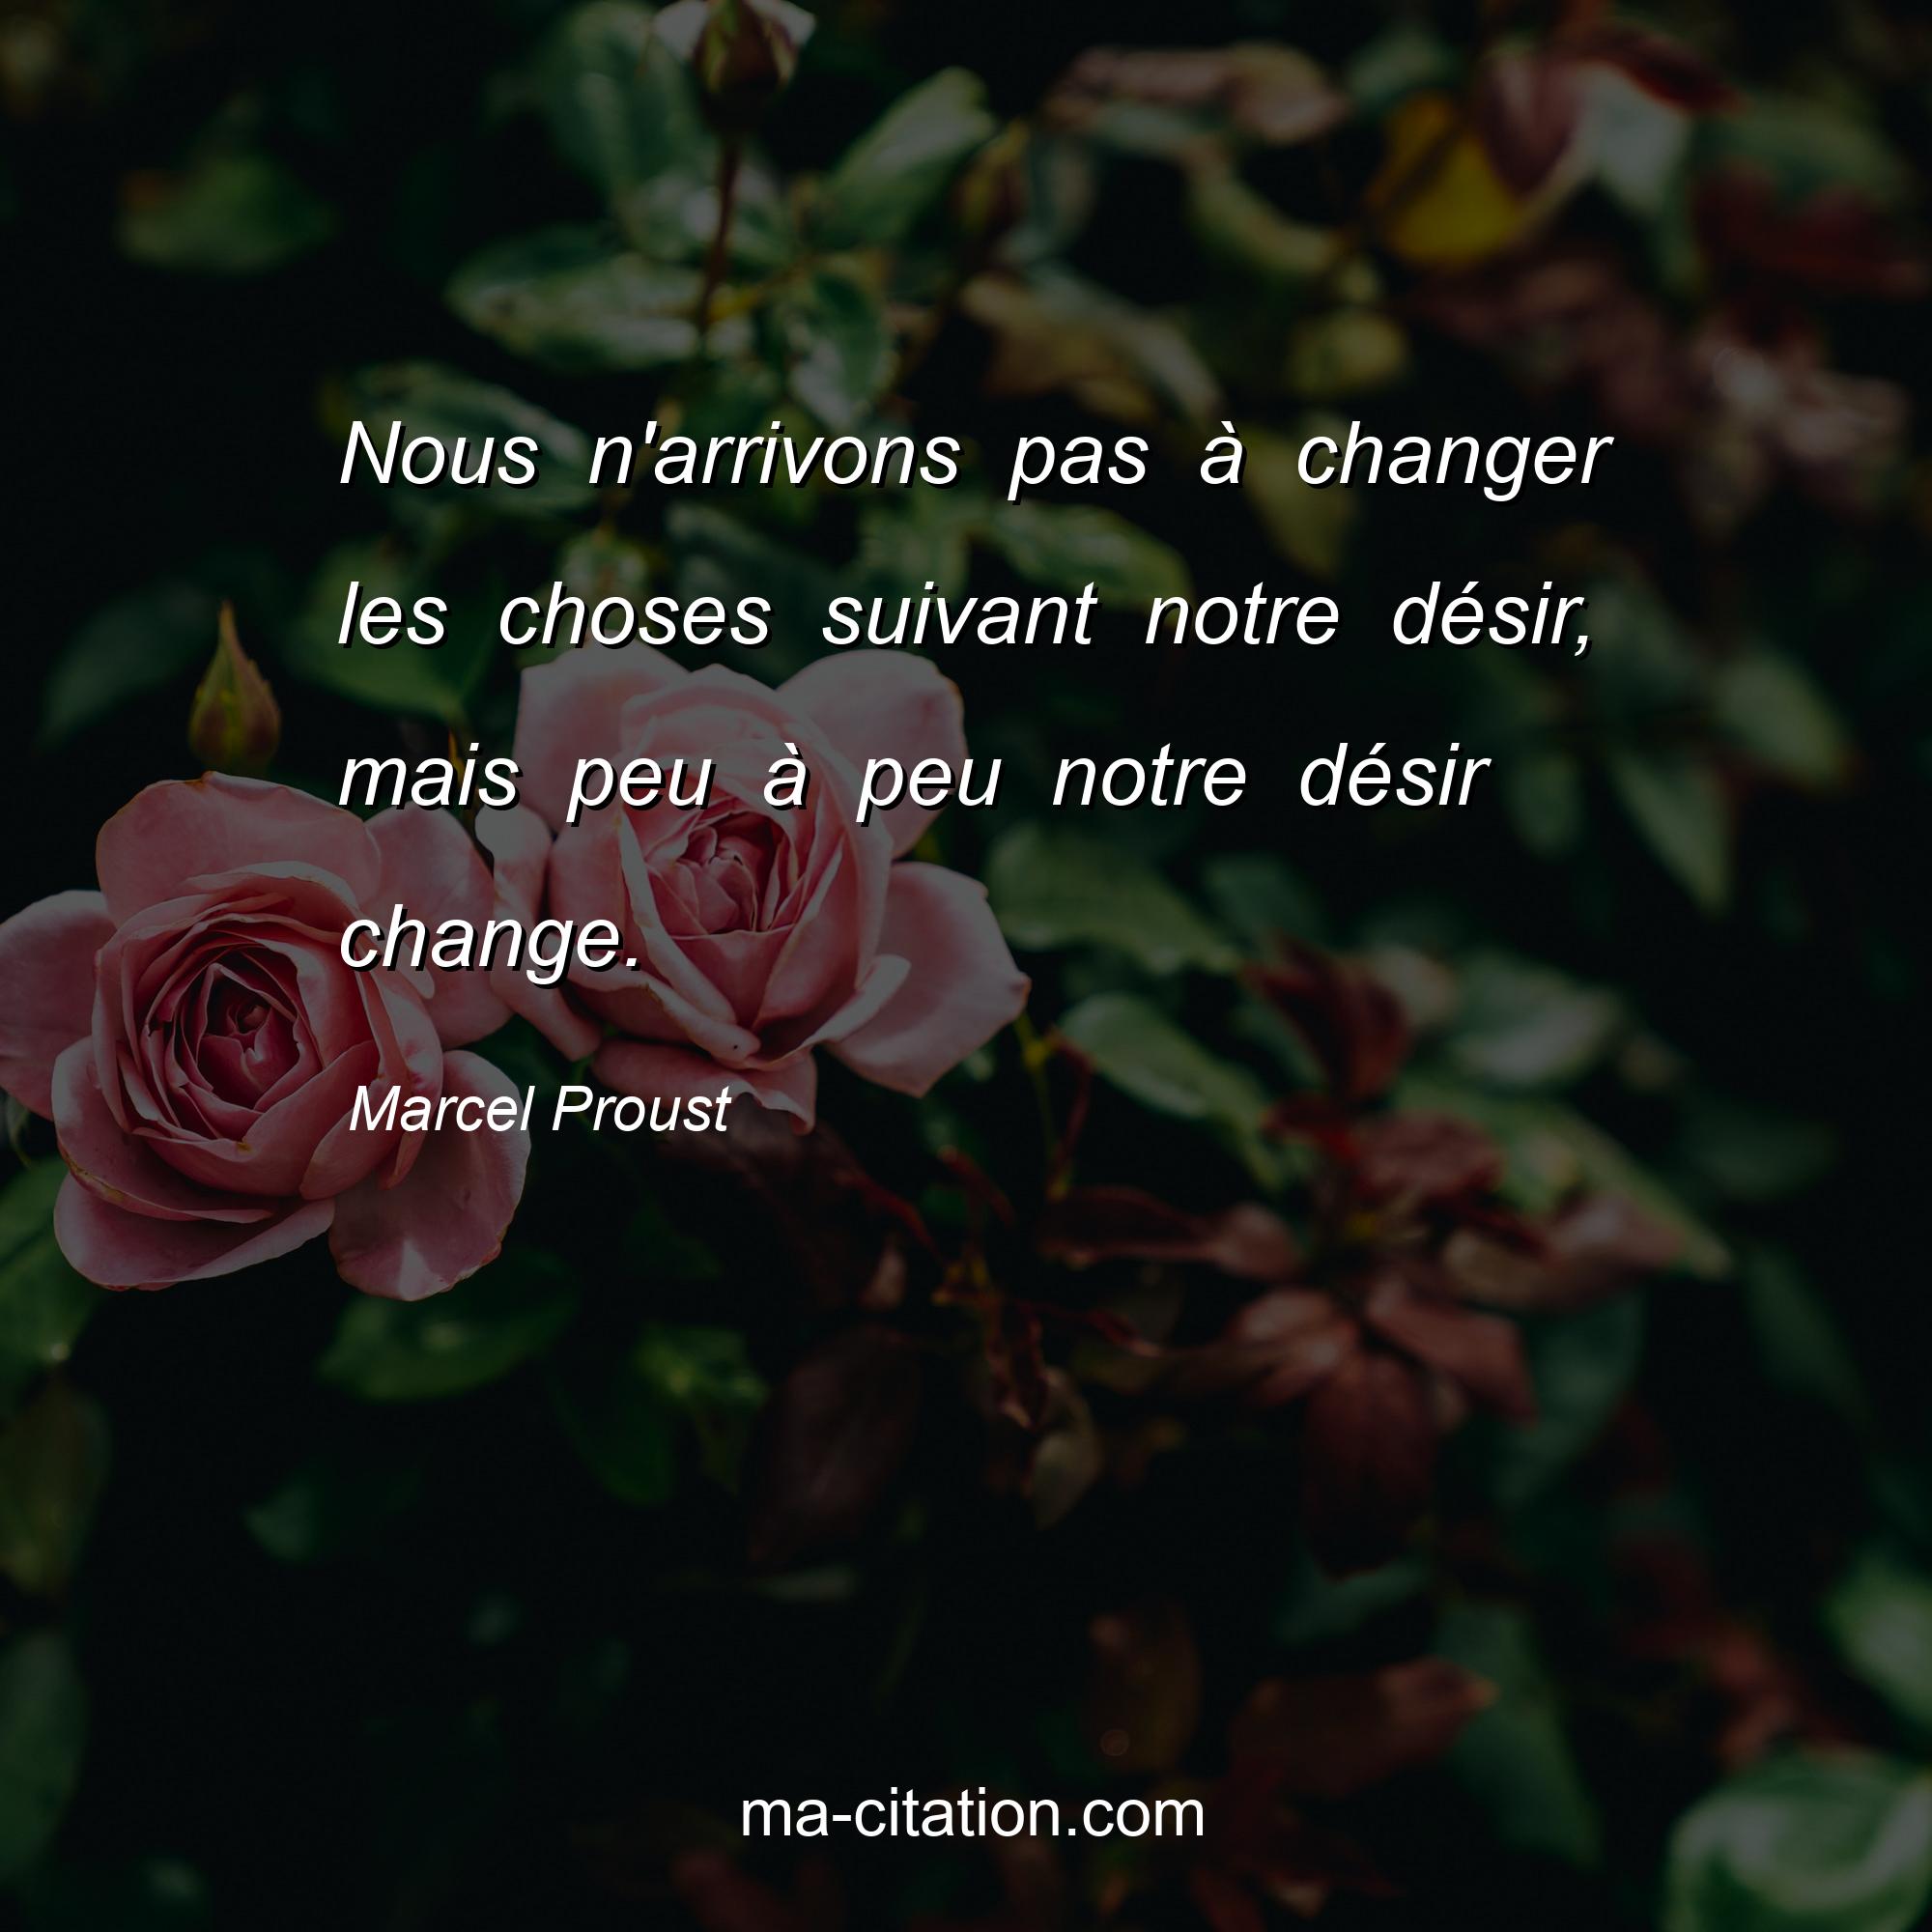 Marcel Proust : Nous n'arrivons pas à changer les choses suivant notre désir, mais peu à peu notre désir change. 